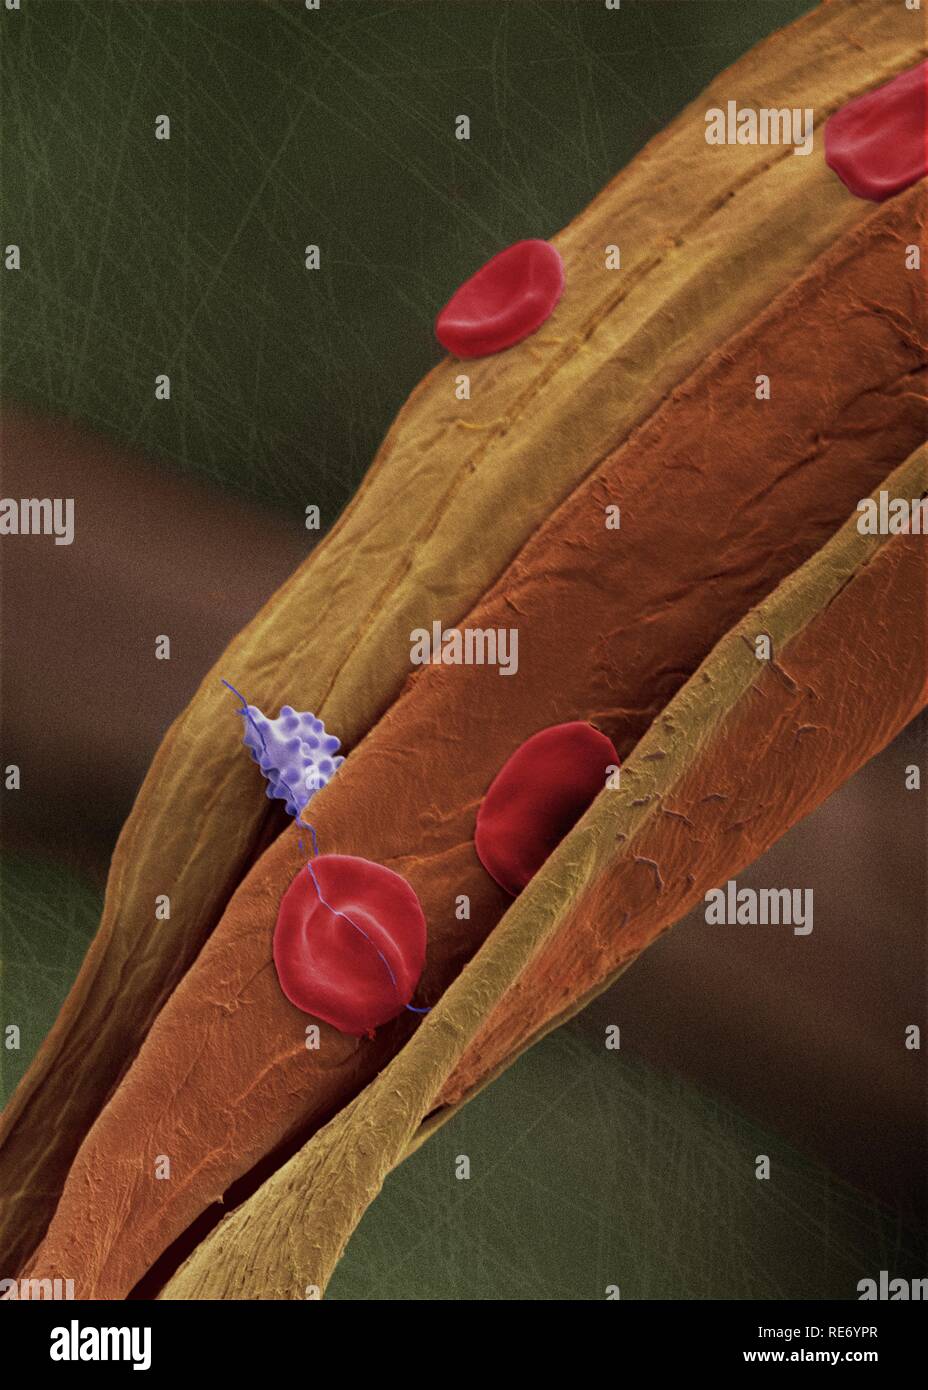 Células sanguíneas humanas sobre una fibra. Fotografía microscopio electrónico de barrido (MEB o SEM). Células sanguíneas humanas sobre una fibra de algodón. Se muestran dos tipos celulares: glóbulos rojos (eritrocitos) y glóbulos blancos (leucocitos) coloreados en violeta. La sangre está compuesta de diferentes tipos celulares. Aquí se muestran los eritrocitos en color rojo. Éstos carecen de núcleo celular y están destinados al transporte de gases. Los eritrocitos son ricos en hemoglobina, una proteína rica en hierro con afinidad para pequeñas moléculas tales como el oxígeno y dióxido de carb Stock Photo